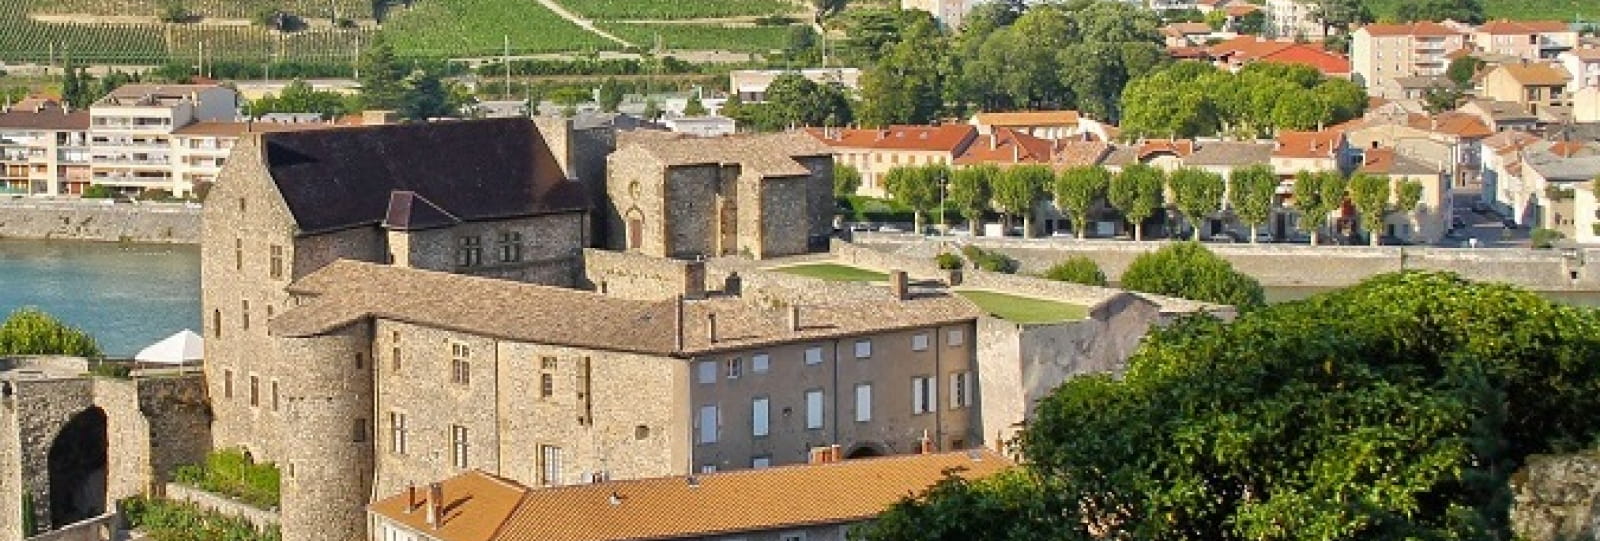 Château musée_Tournon sur Rhone